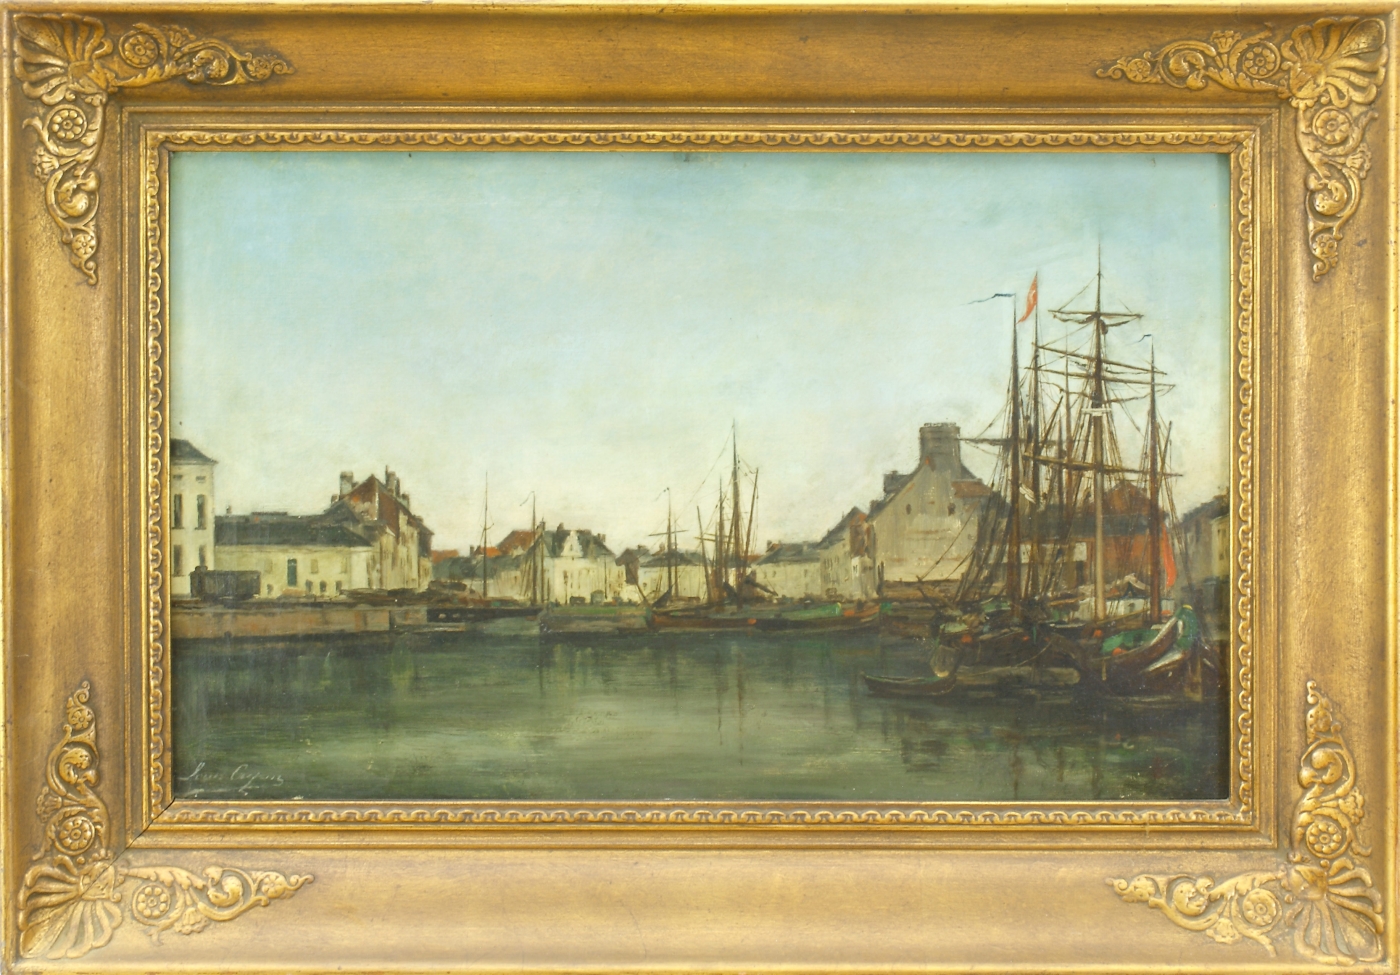 Auktionshaus Quentin Berlin  Gemälde Landschaftsmaler  Frankreich  19. Jh.  Im Hafen